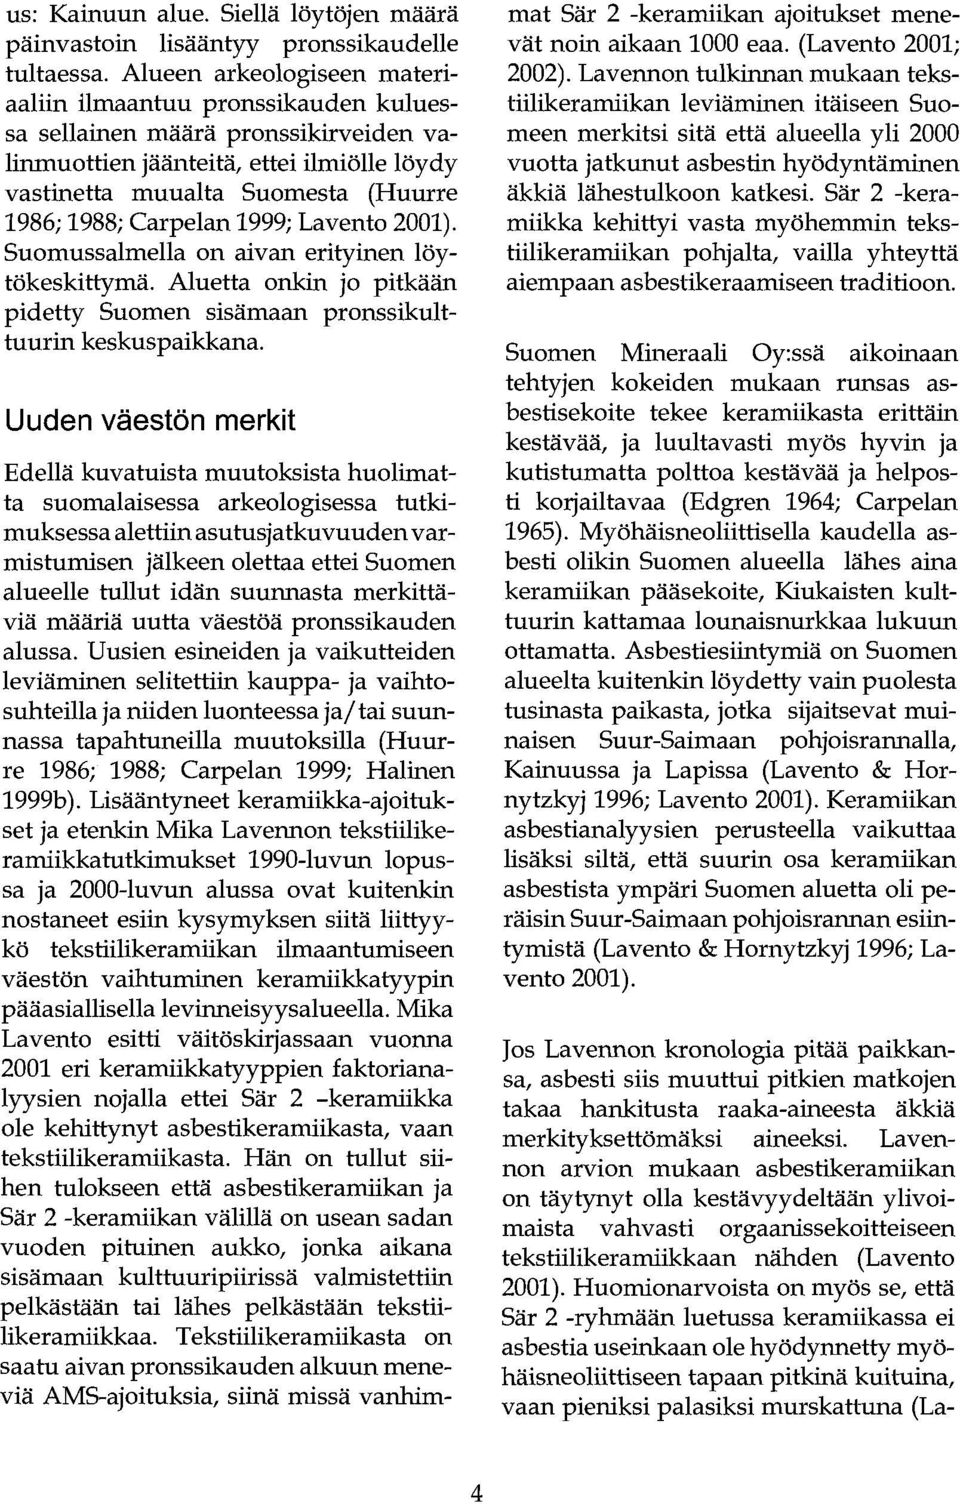 Carpelan 1999; Lavento 2001). Suomussalmella on aivan erityinen löytökeskittymä. Aluetta onkin jo pitkään pidetty Suomen sisämaan pronssikulttuurin keskuspaikkana.